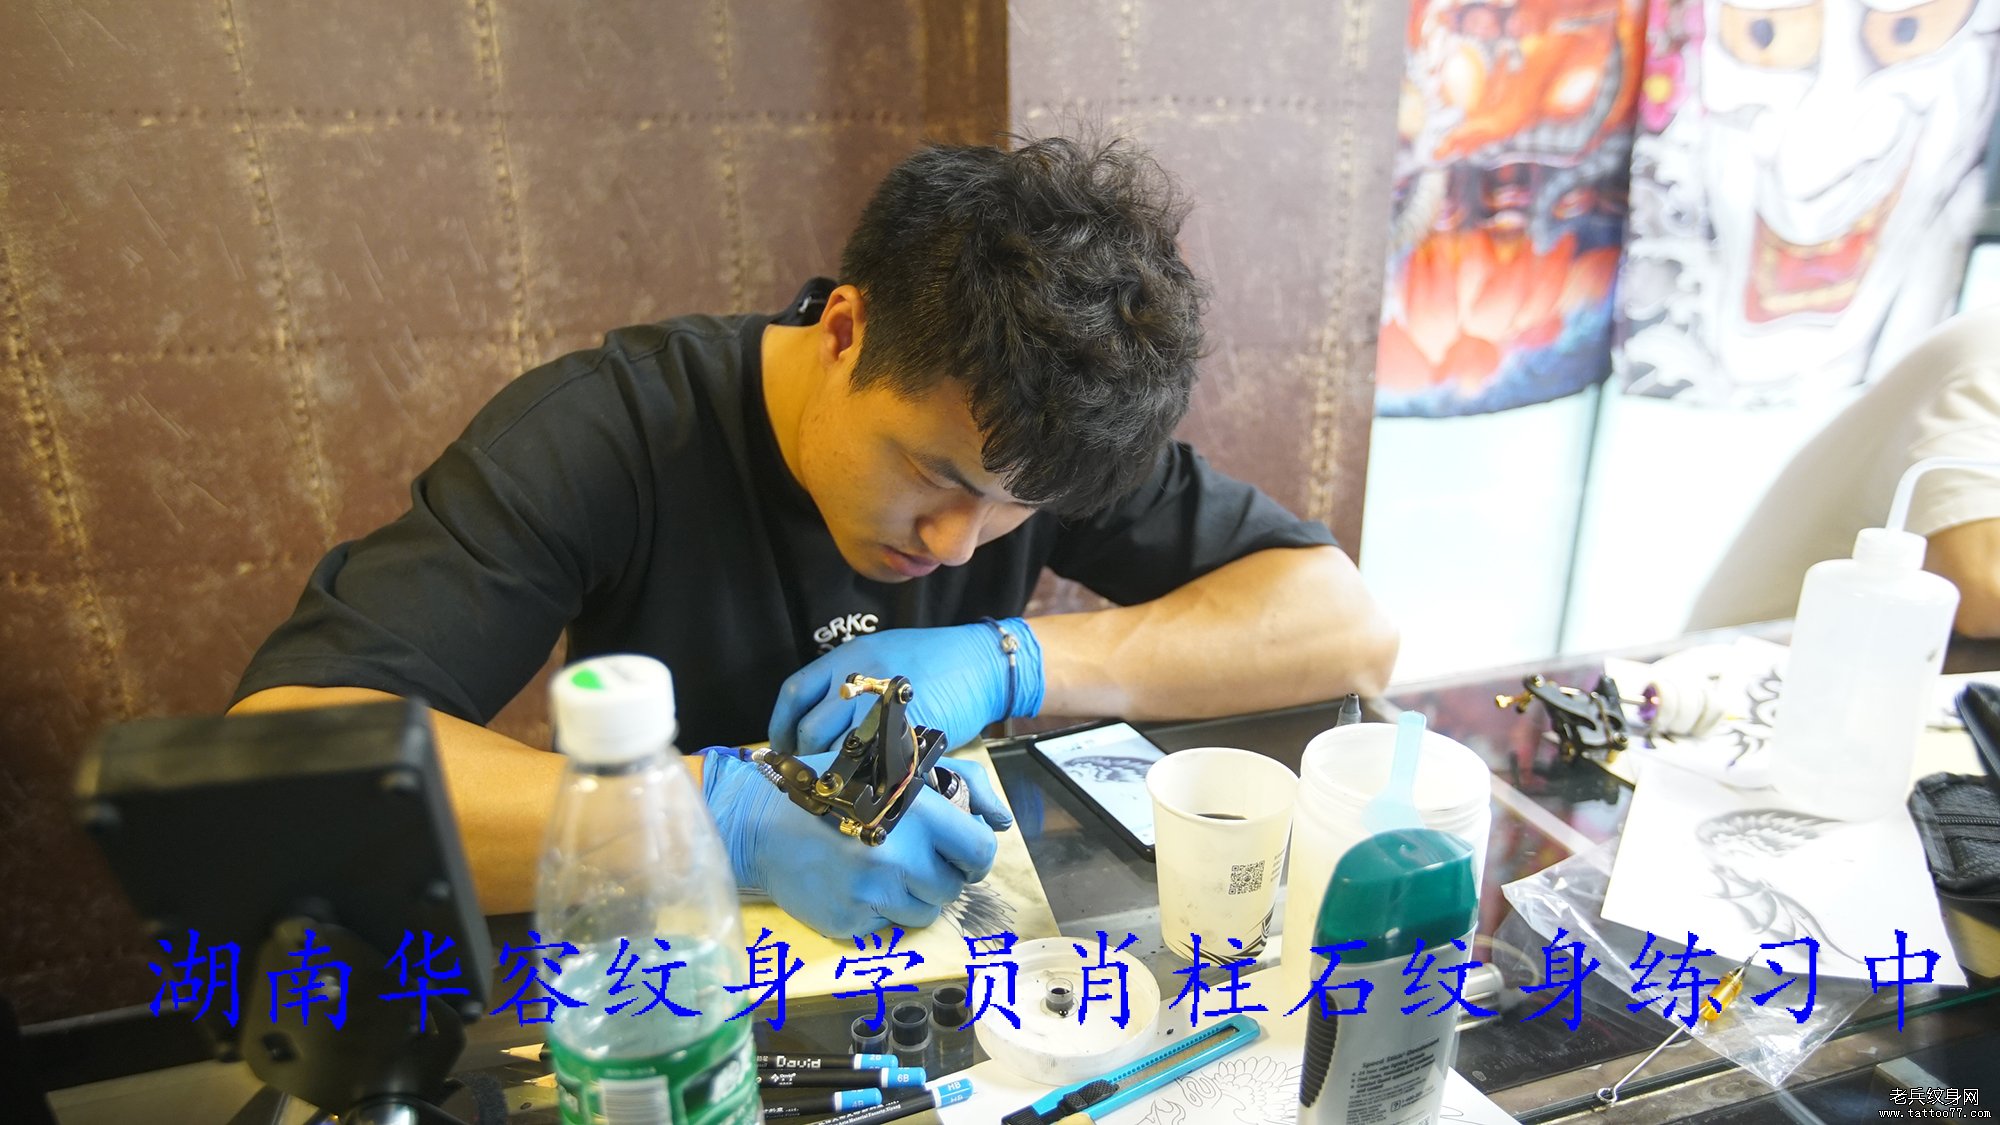 湖南华容纹身学员肖柱石纹身练习中